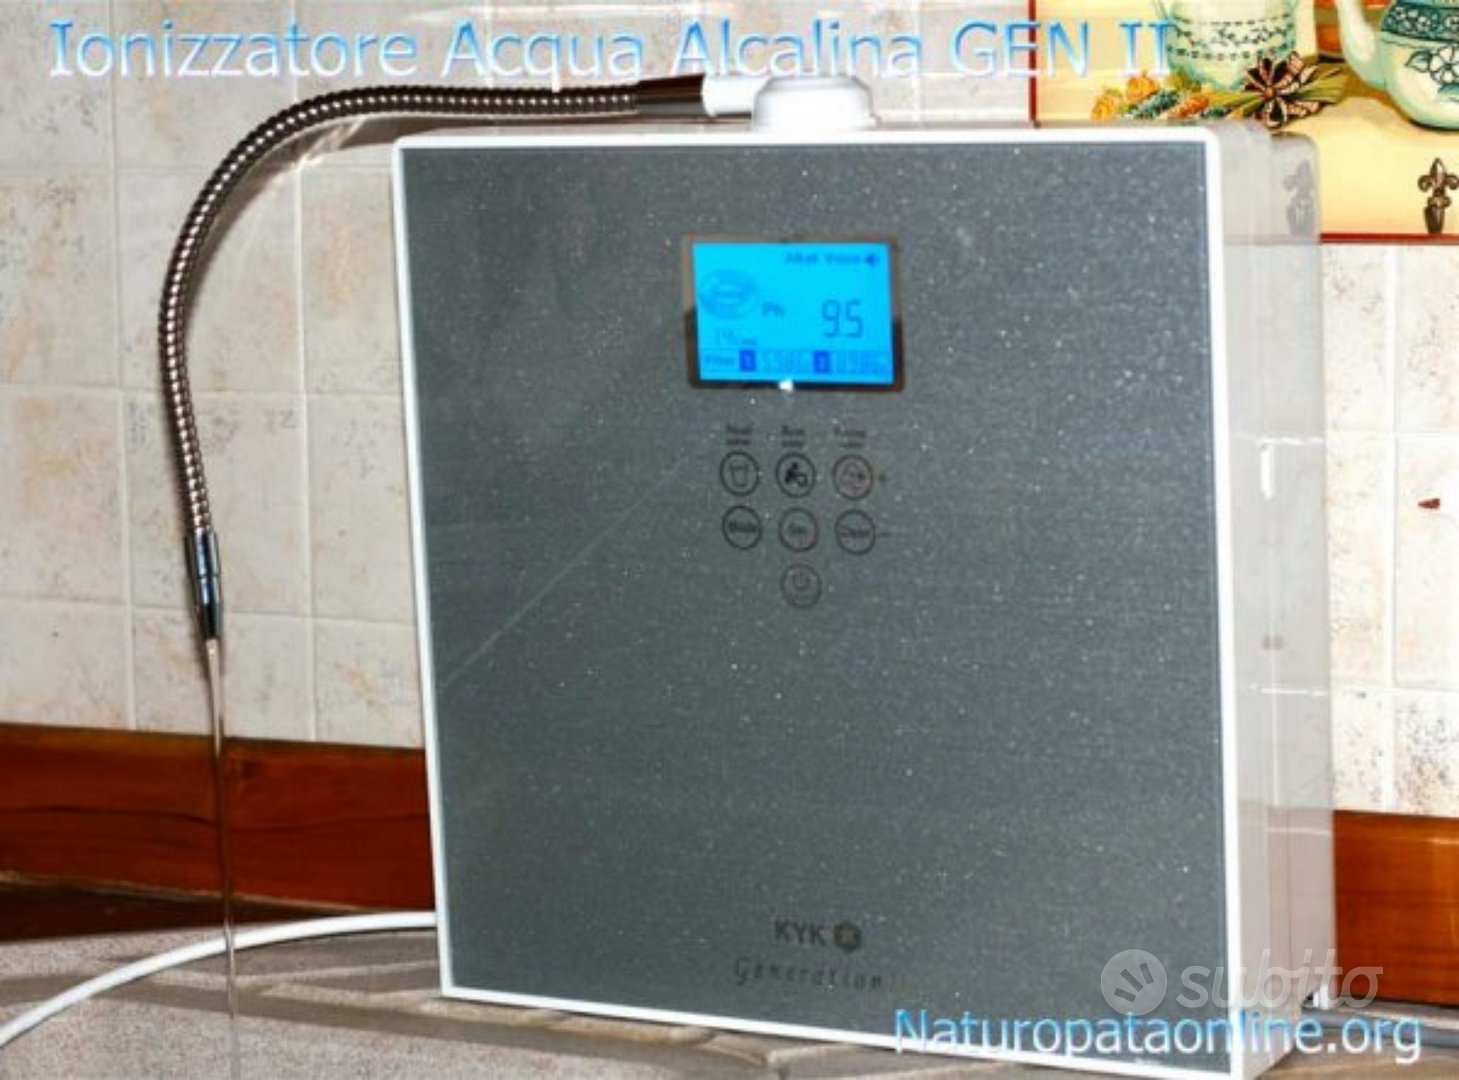 Ionizzatore acqua alcalina Vitha - Arredamento e Casalinghi In